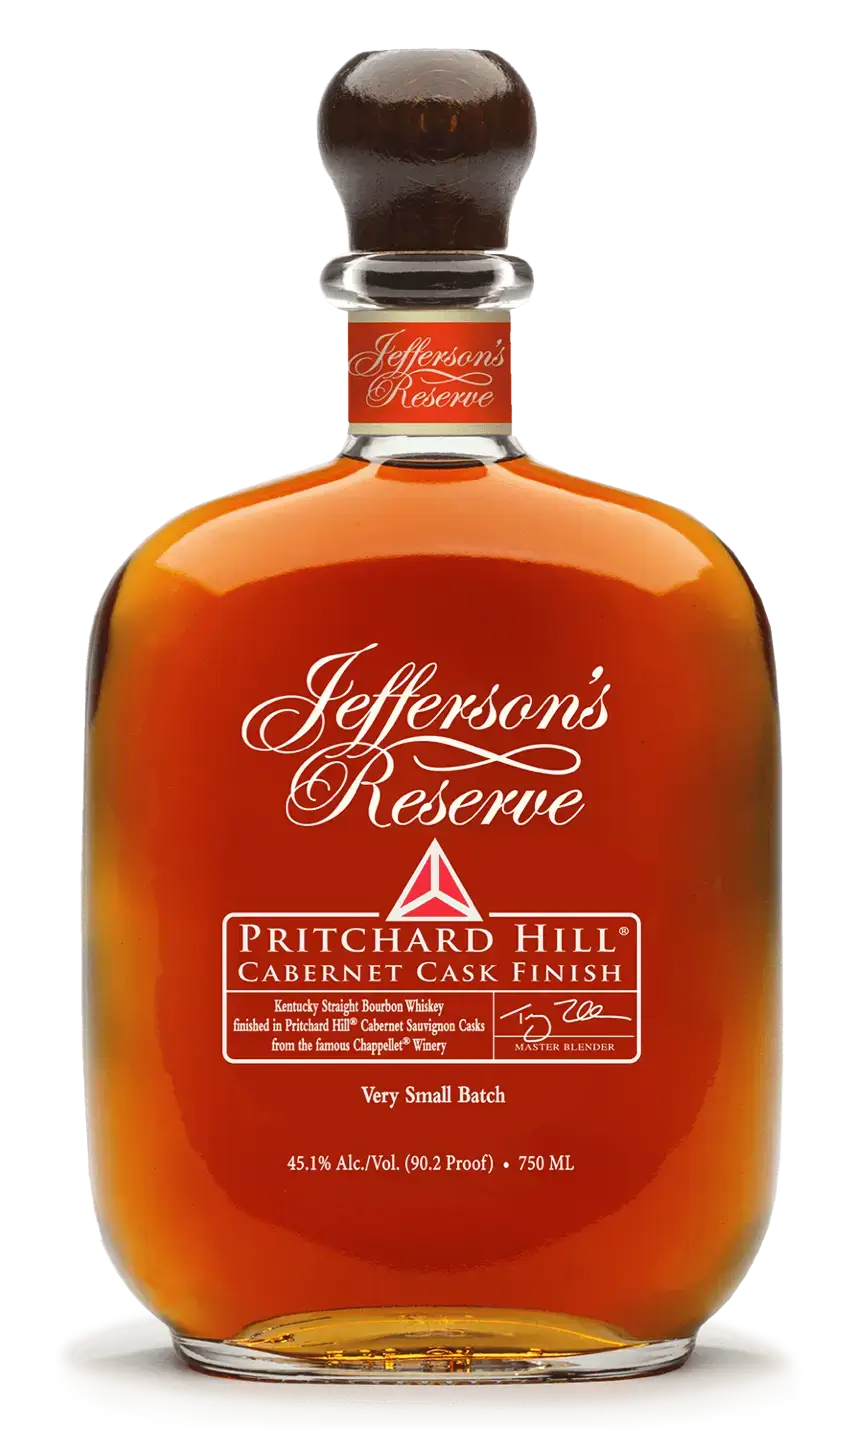 Jefferson's Pritchard Hill